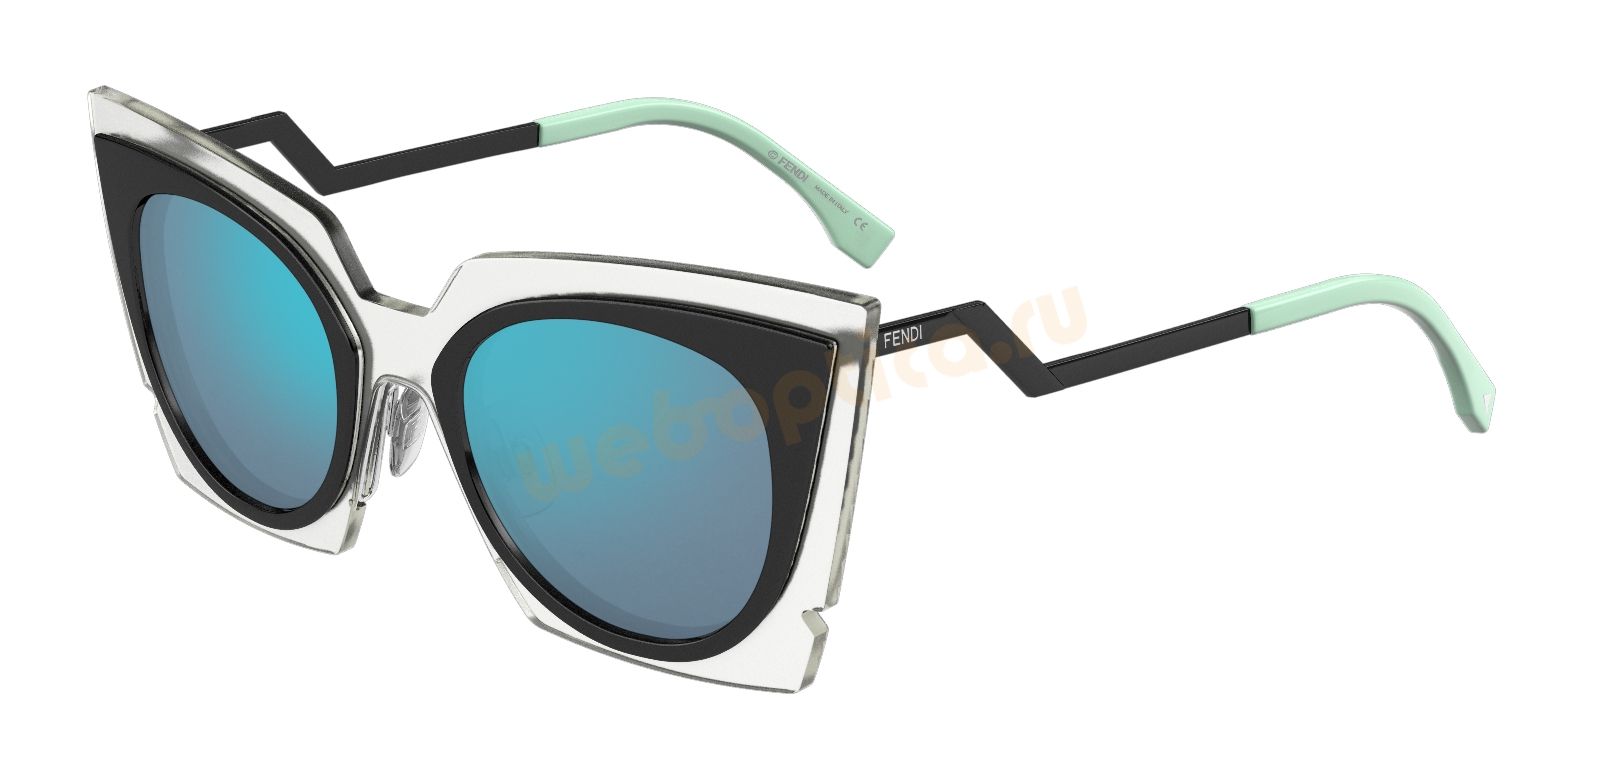 Солнцезащитные очки FENDI FF 0117S-IBZ купить в Москве, цена, интернет магазин